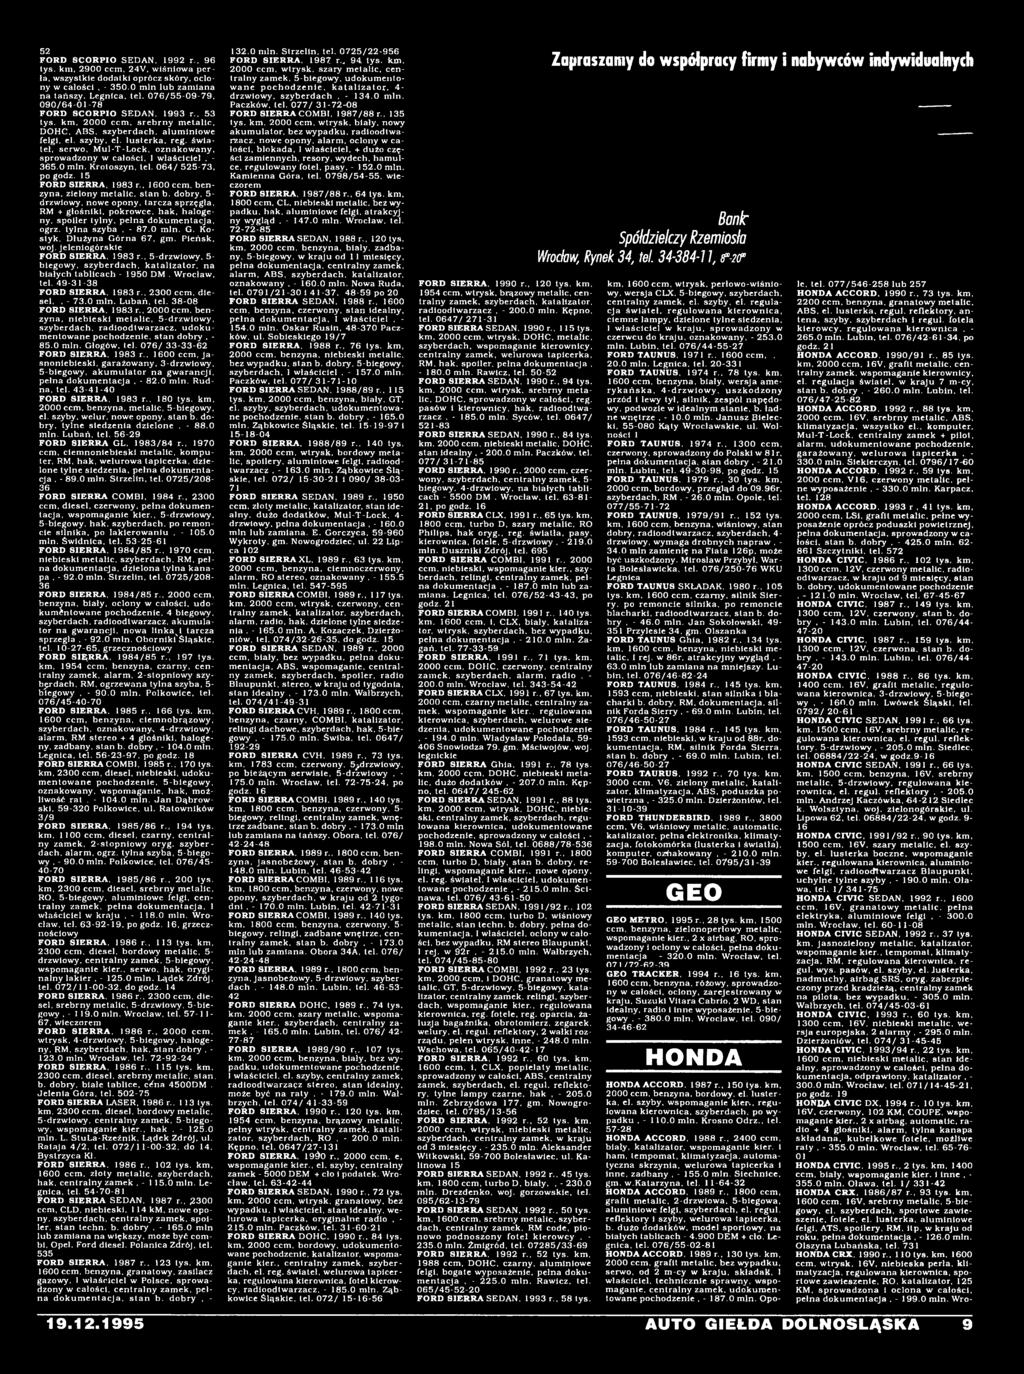 jeleniogórskie FORD SIERRA. 1983 r.. 5-drzwiowy, 5- biegowy. szyberdach. katalizator, na białych tablicach - 1950 DM. Wrocław, tel. 49-31-38 FORD SIERRA. 1983 r.. 2300 ccm. diesel,, - 73.0 min.